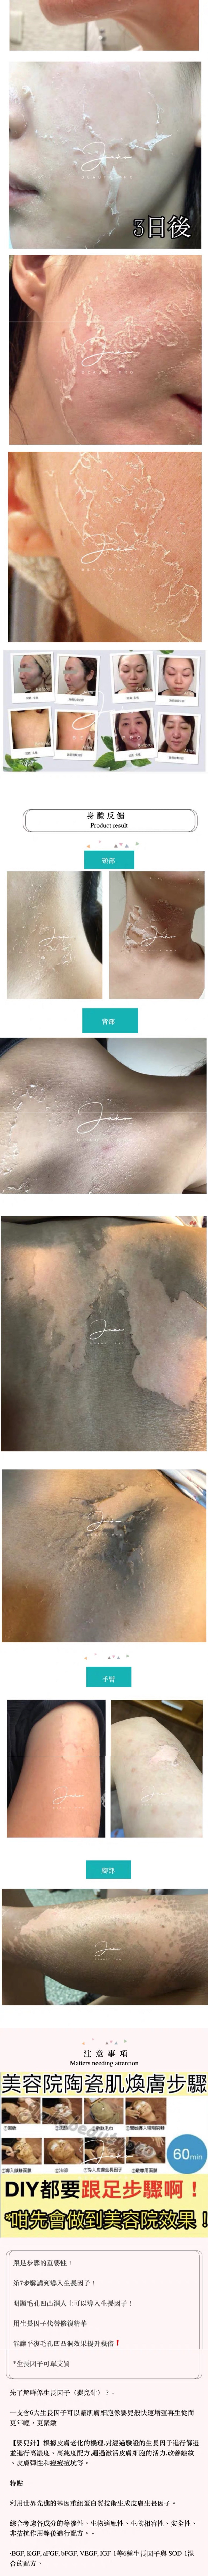 韓國thermoCEUTICAL- FCR珊瑚鈣煥膚 陶瓷肌煥膚 散裝/套裝